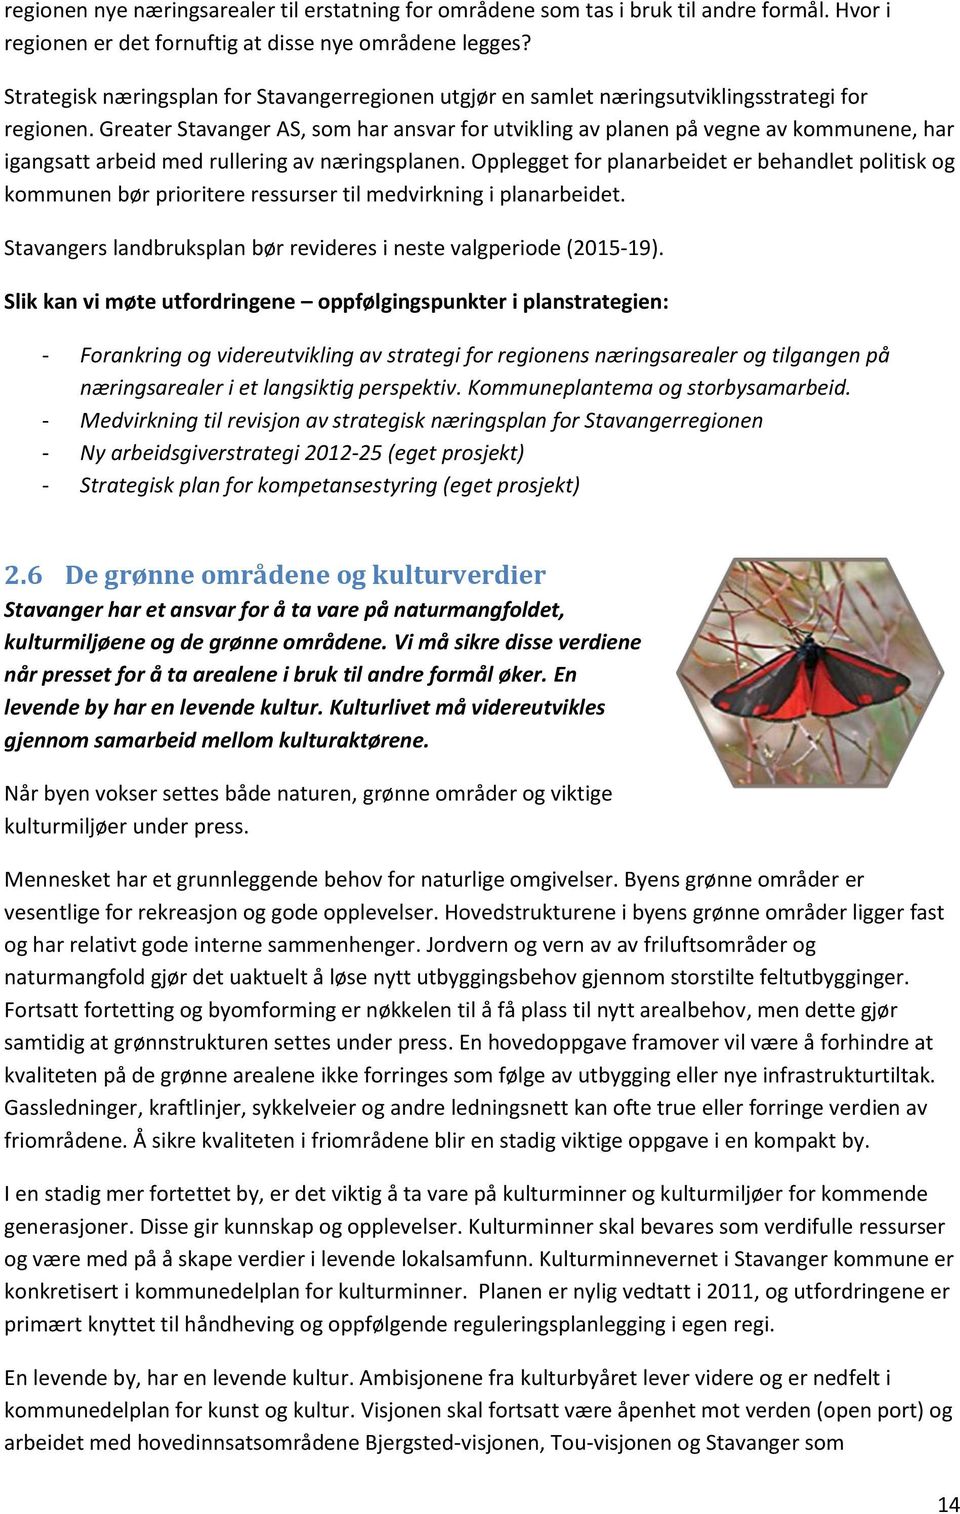 Greater Stavanger AS, som har ansvar for utvikling av planen på vegne av kommunene, har igangsatt arbeid med rullering av næringsplanen.